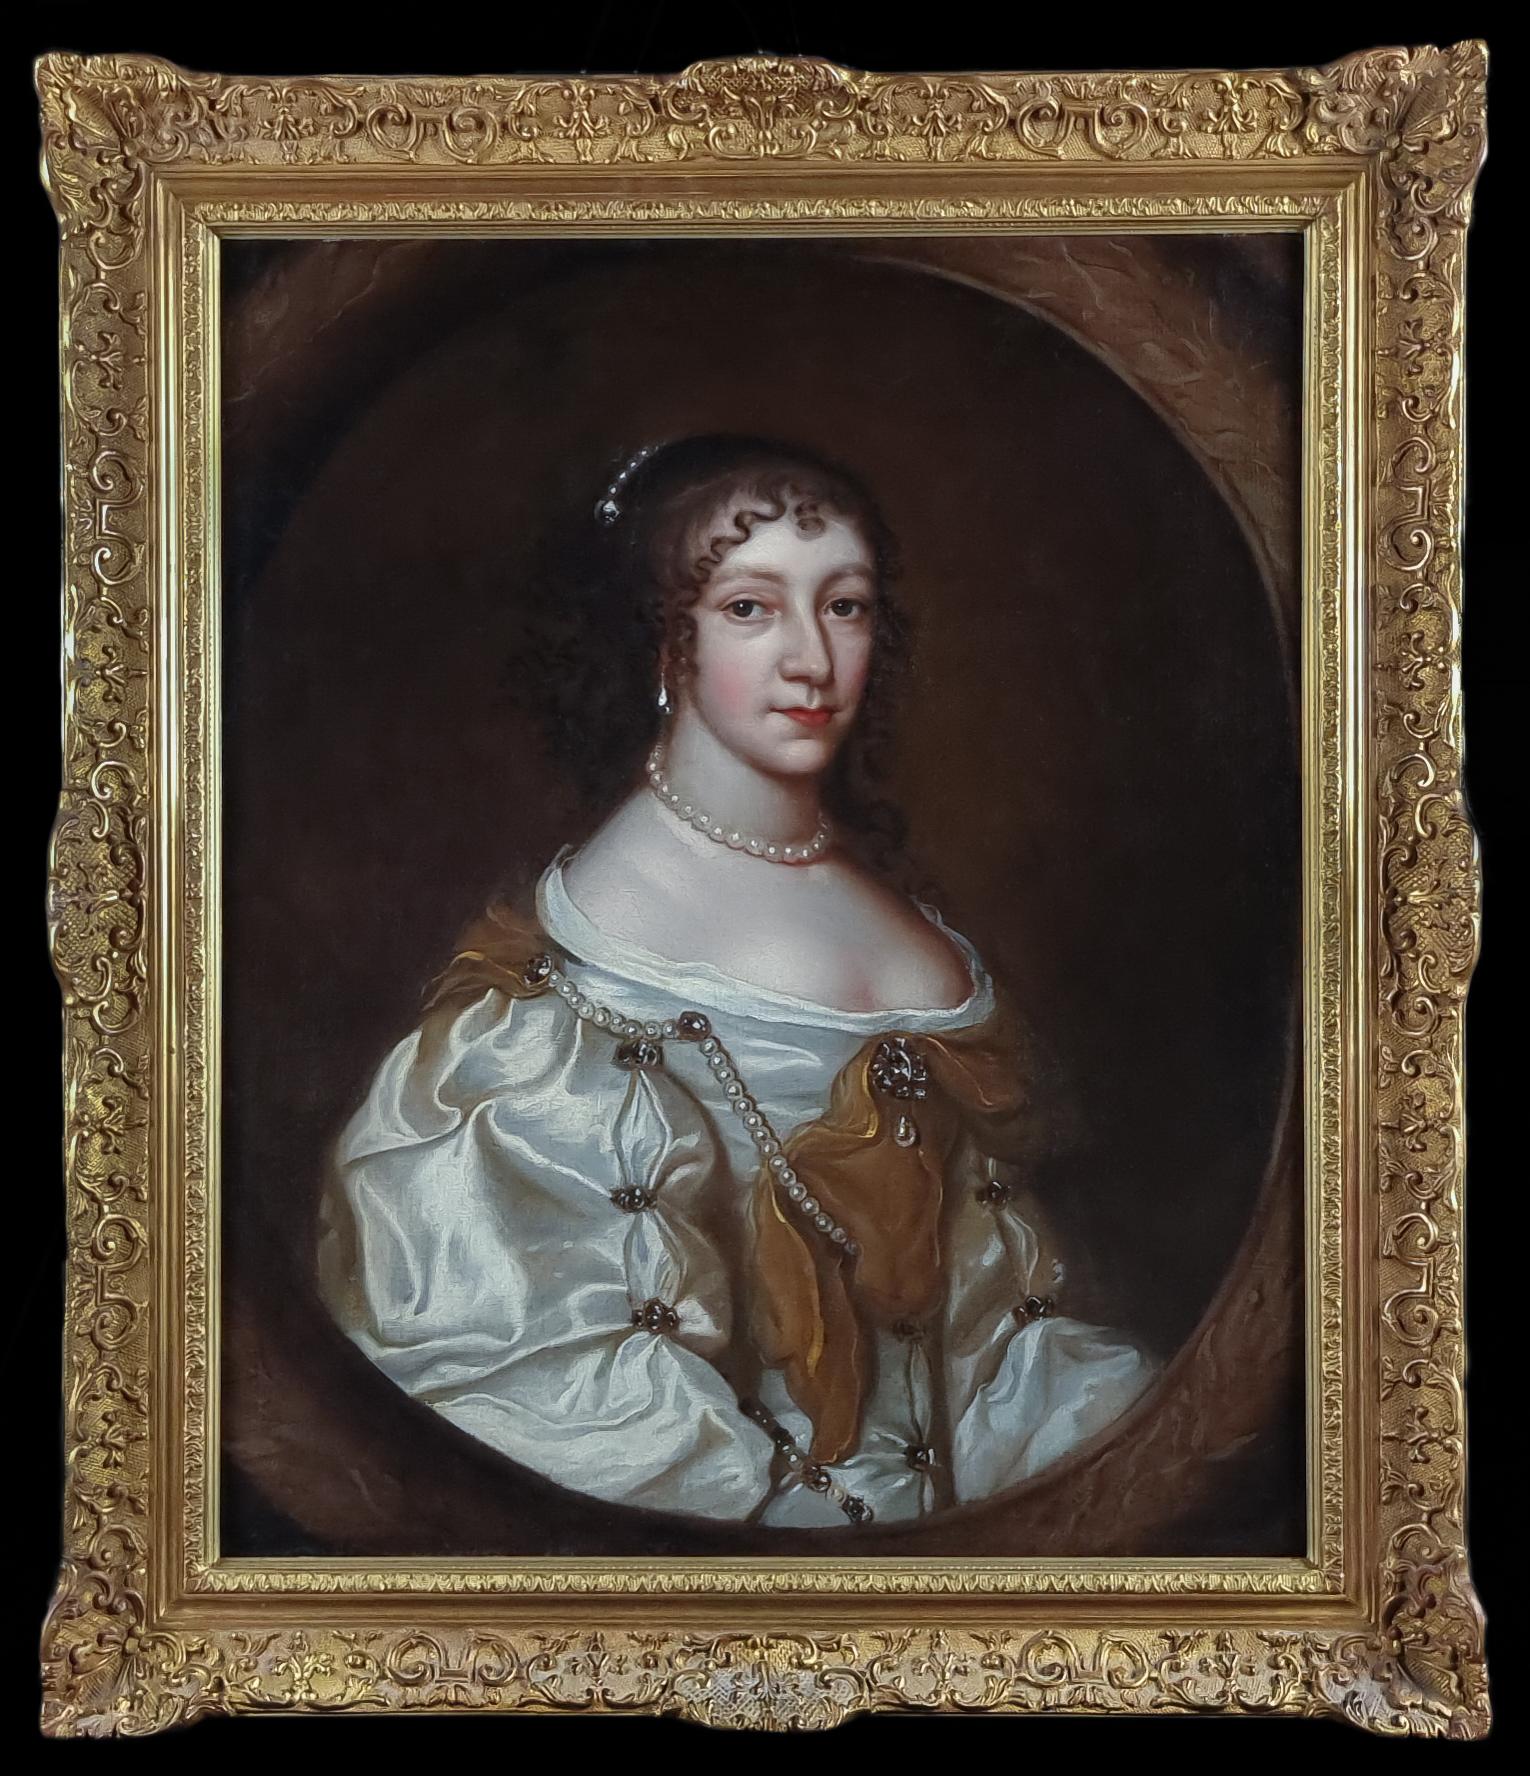 Portrait Painting (Circle of) Sir Peter Lely - Portrait d'une femme en robe de soie argentée et perles, vers 1660, peinture à l'huile sur toile